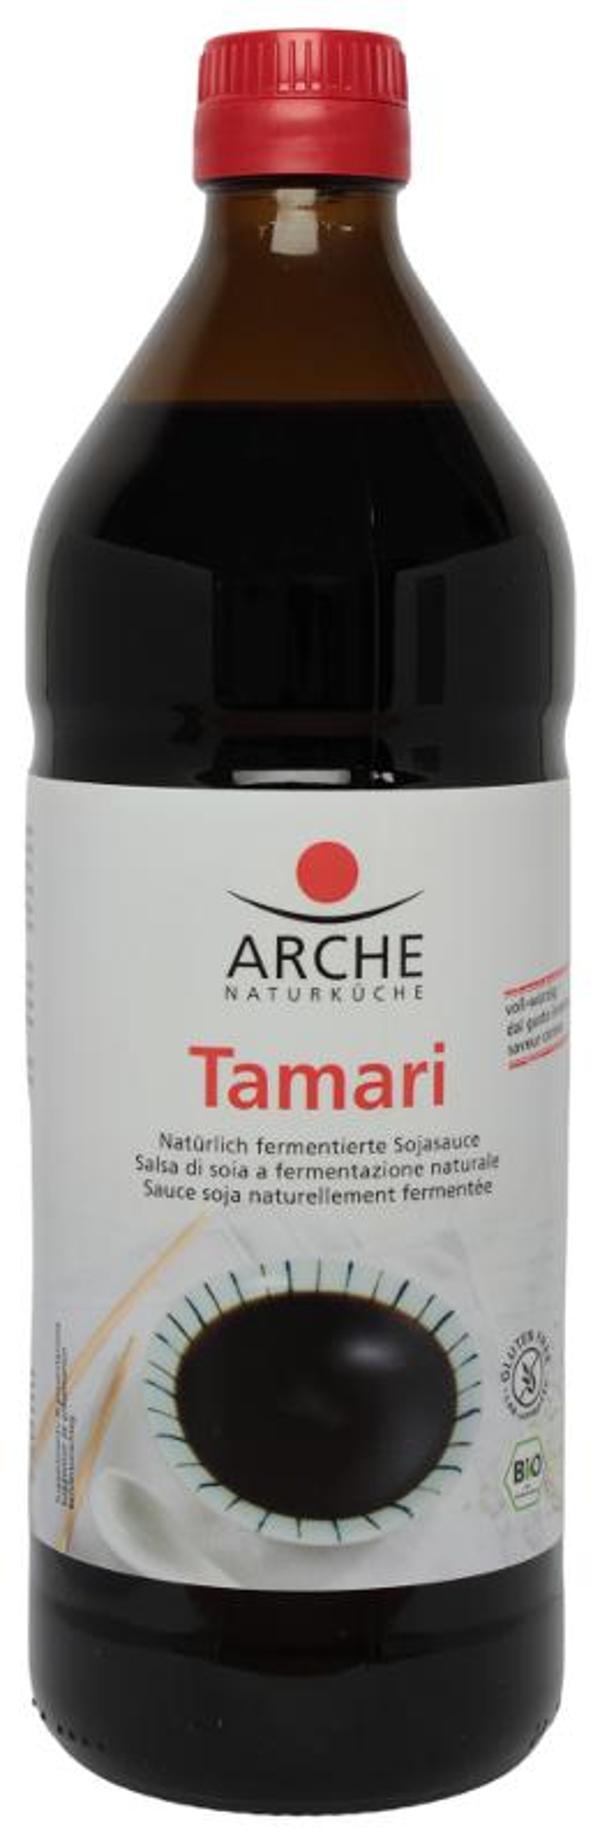 Produktfoto zu Tamari natürlich fermentierte